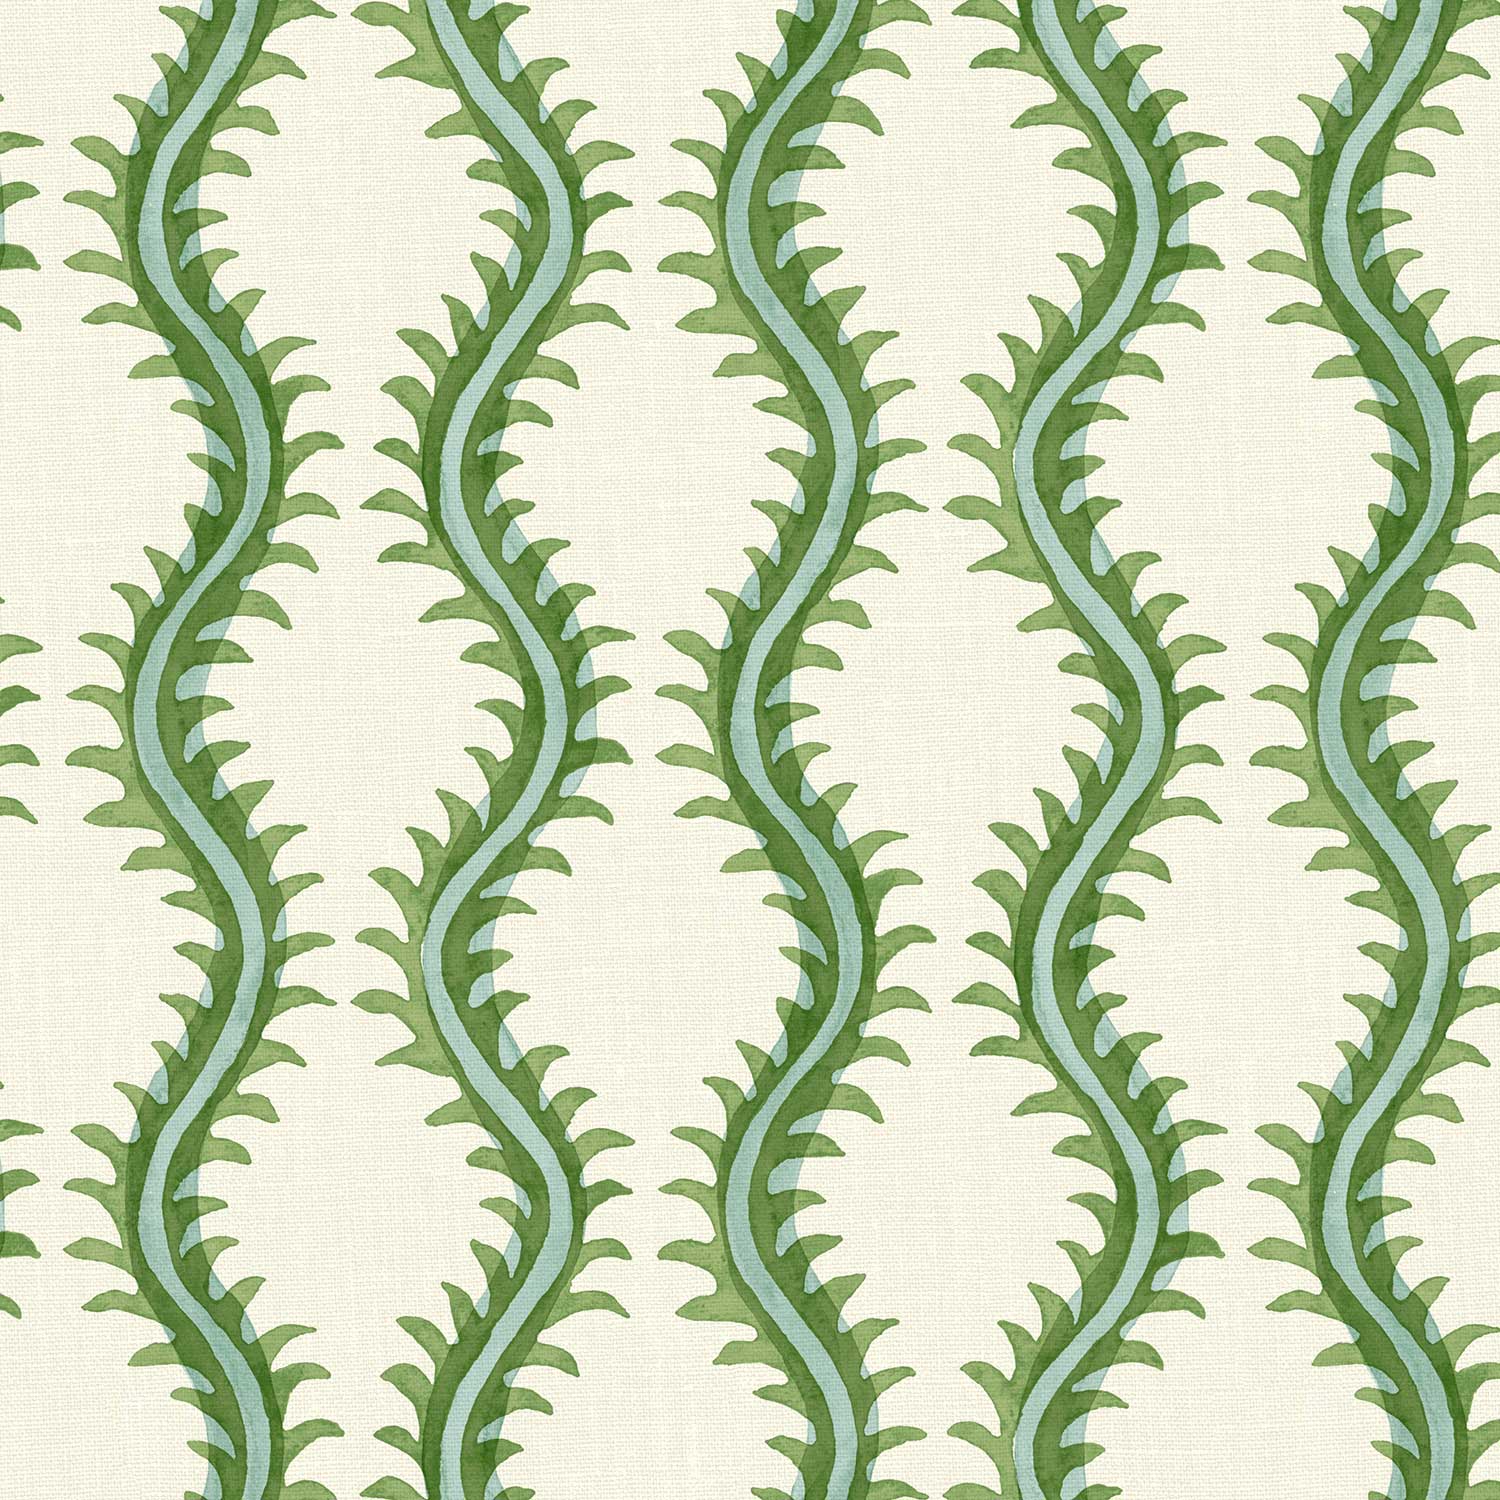 Helter Skelter – Mekong, Printed Linen Fabric